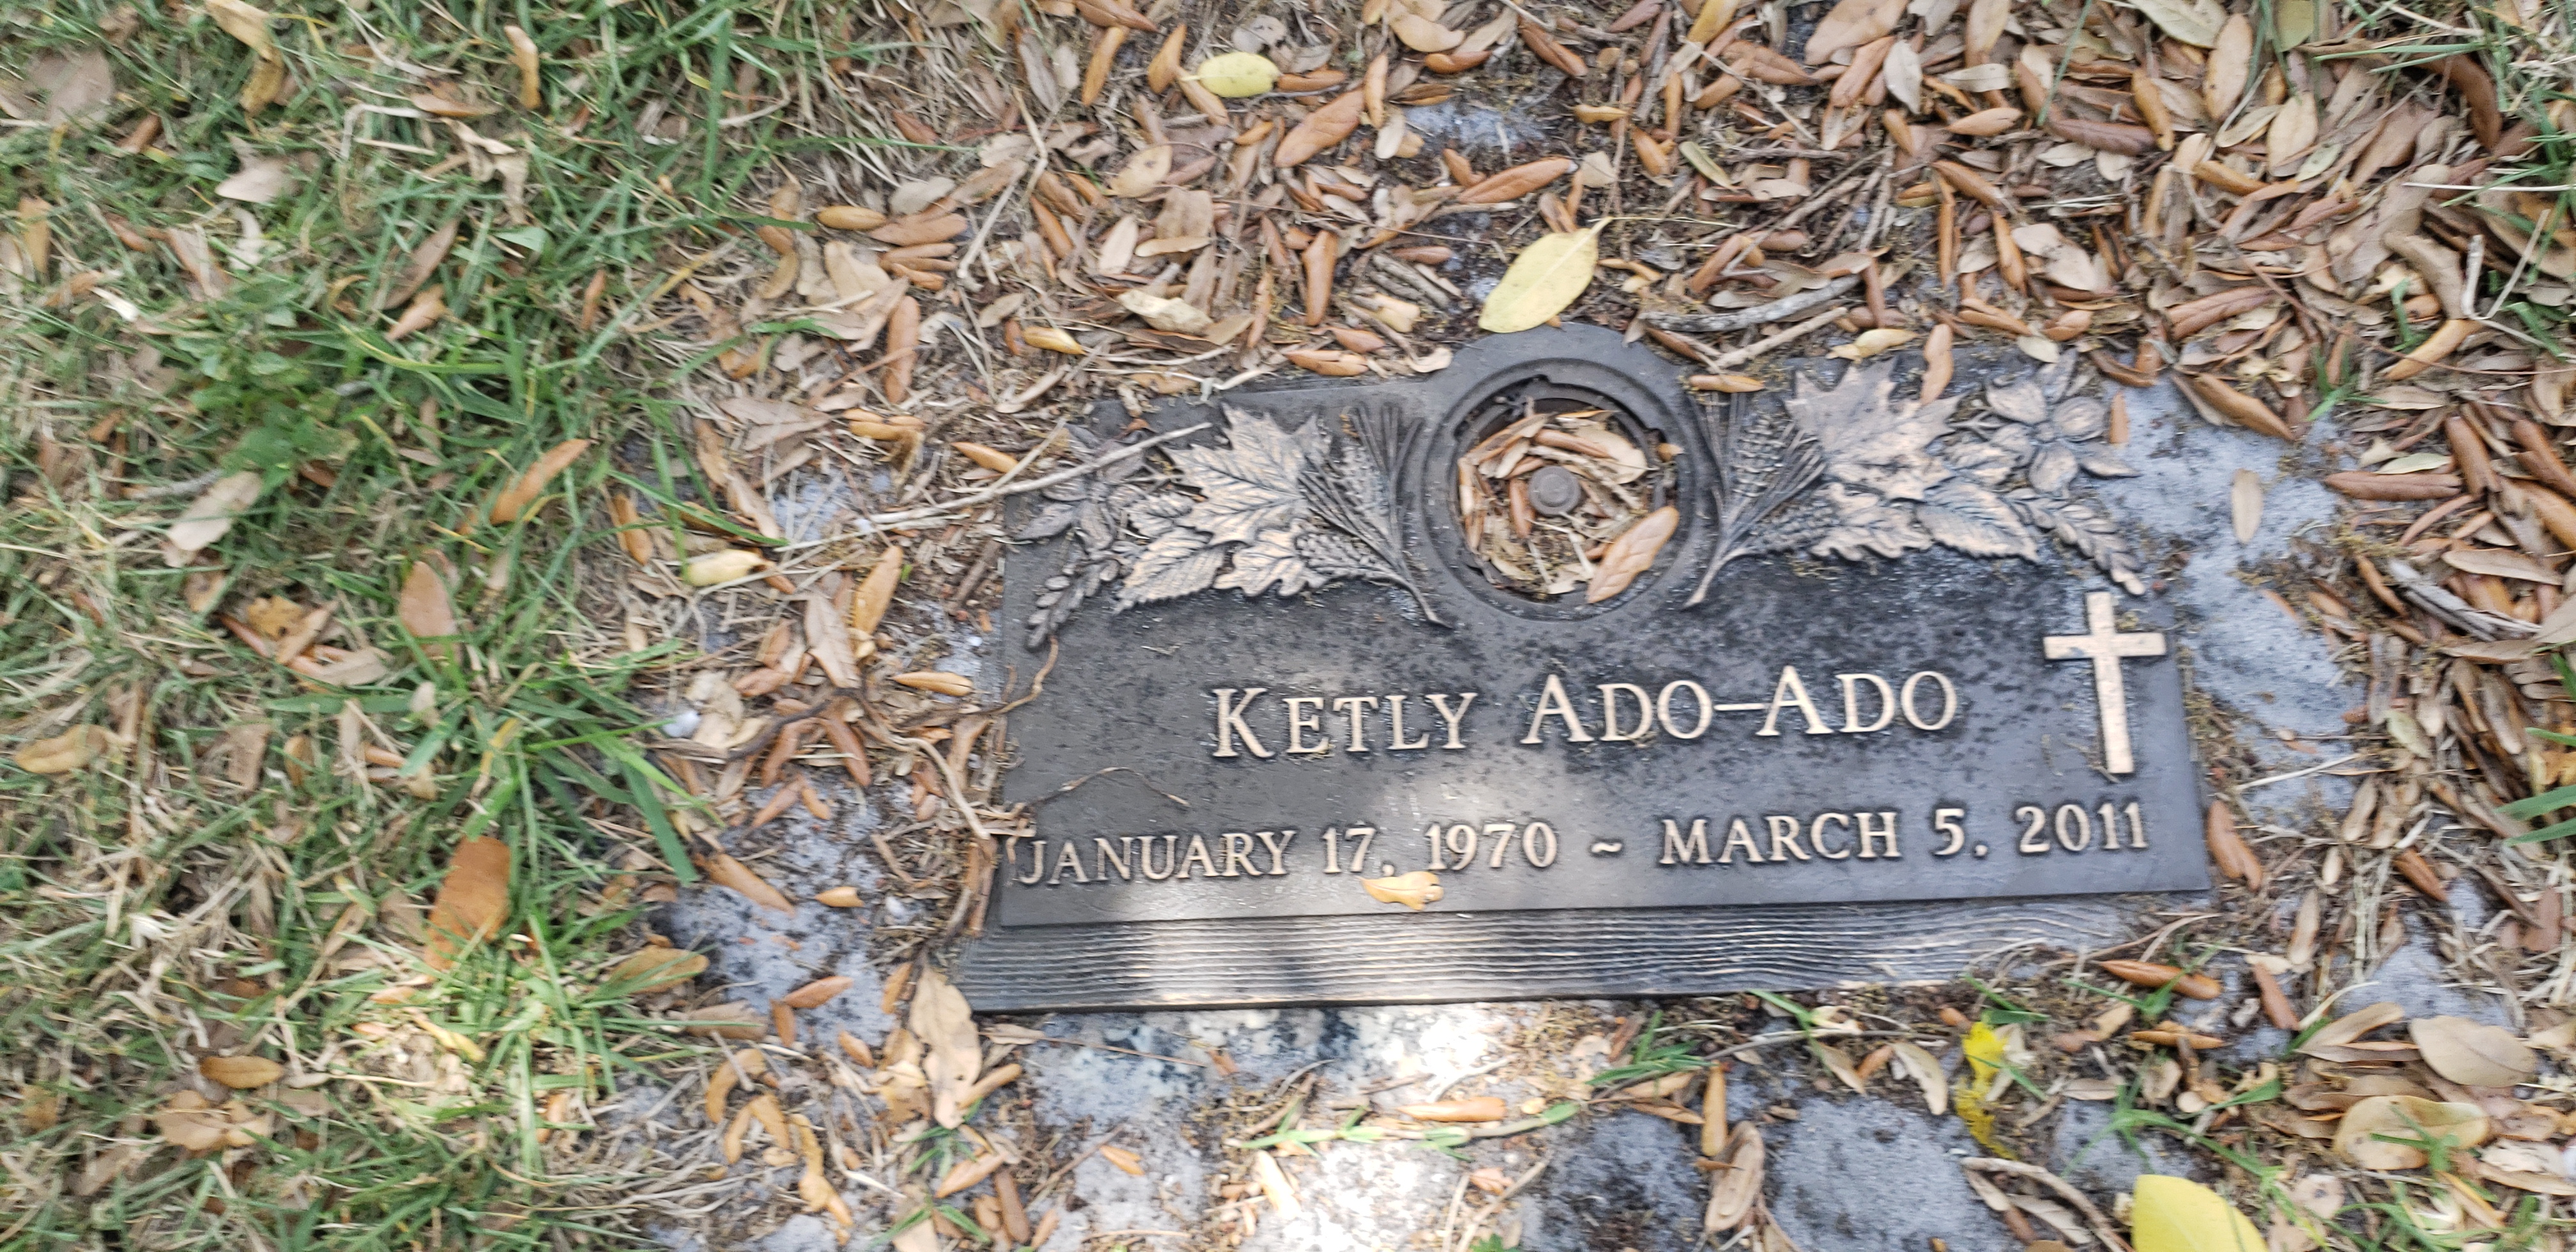 Ketly Ado-Ado